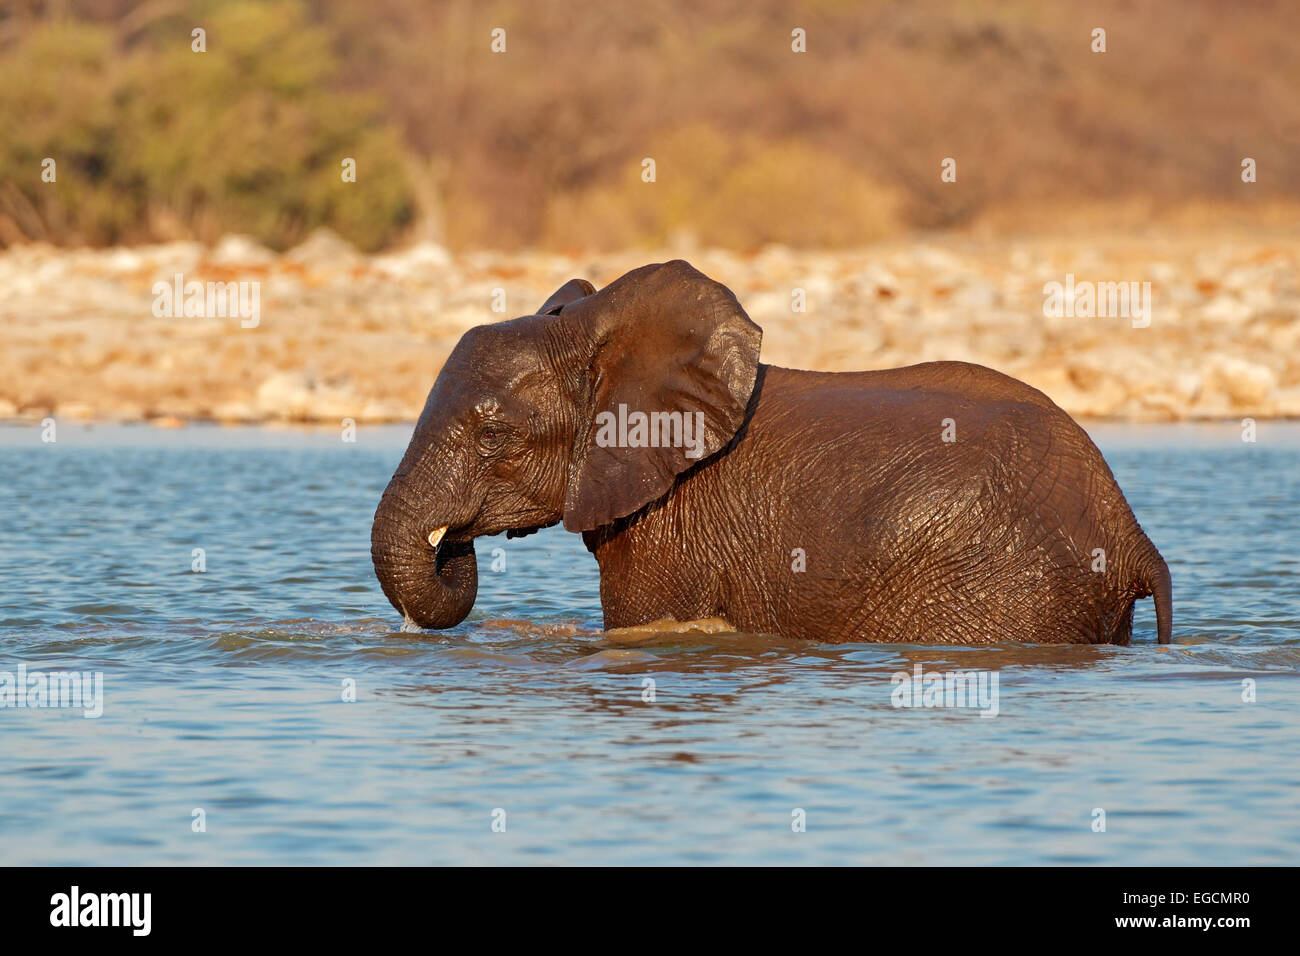 African elephant (Loxodonta africana) playing in water, Etosha National Park, Namibia Stock Photo